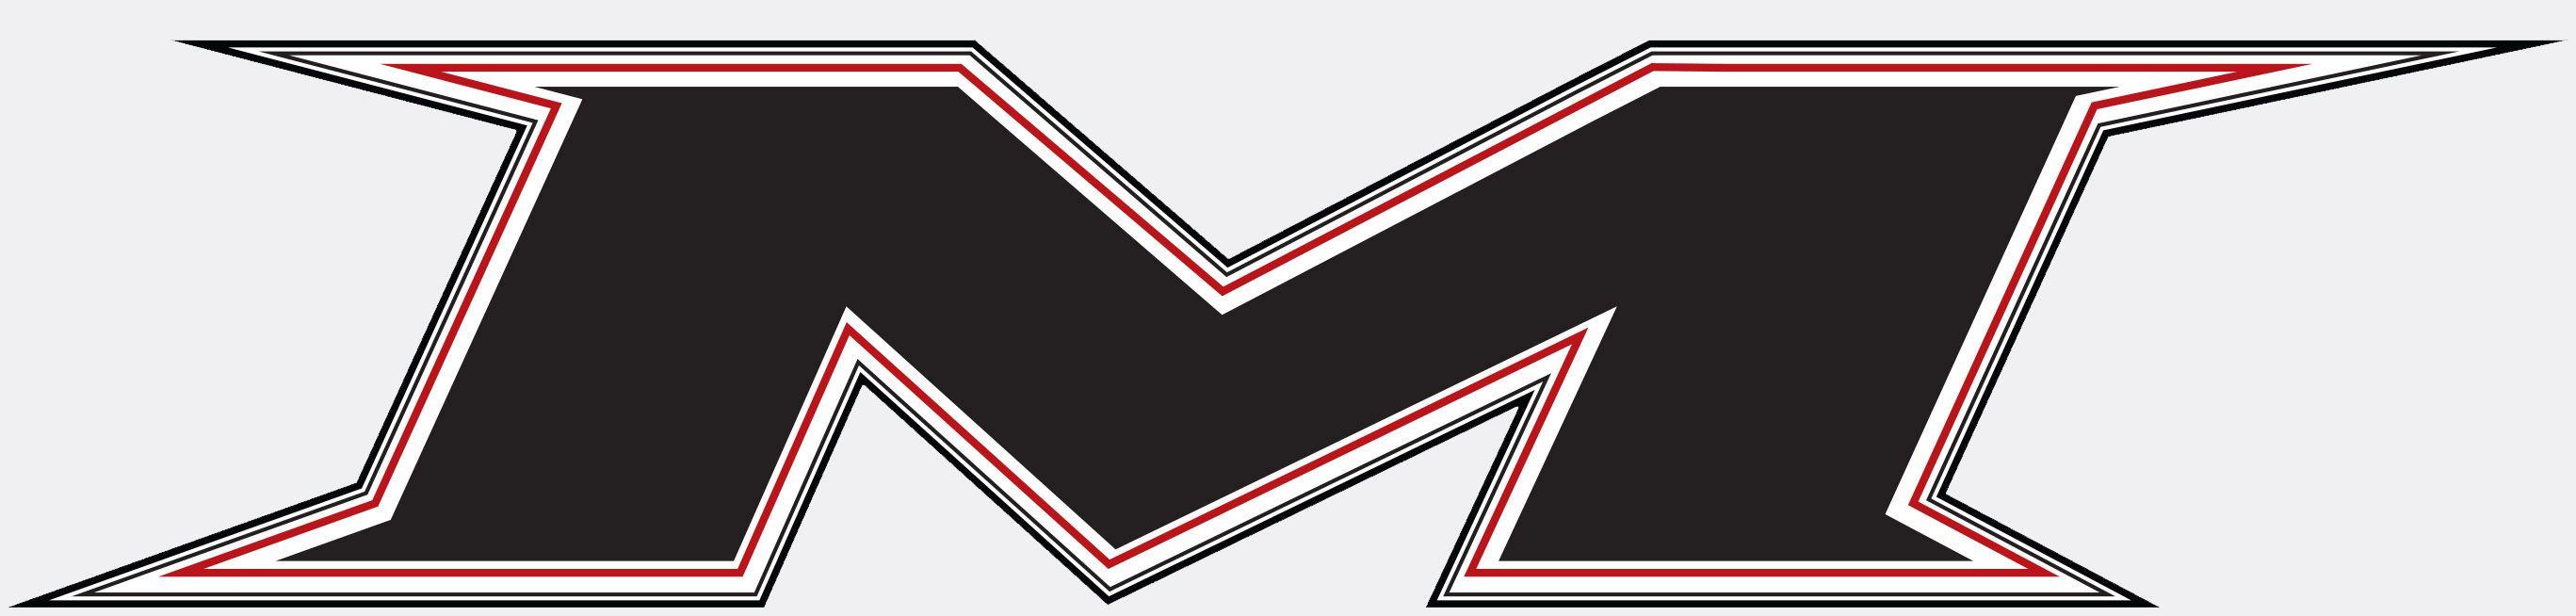 Miken Logo - Miken Logos